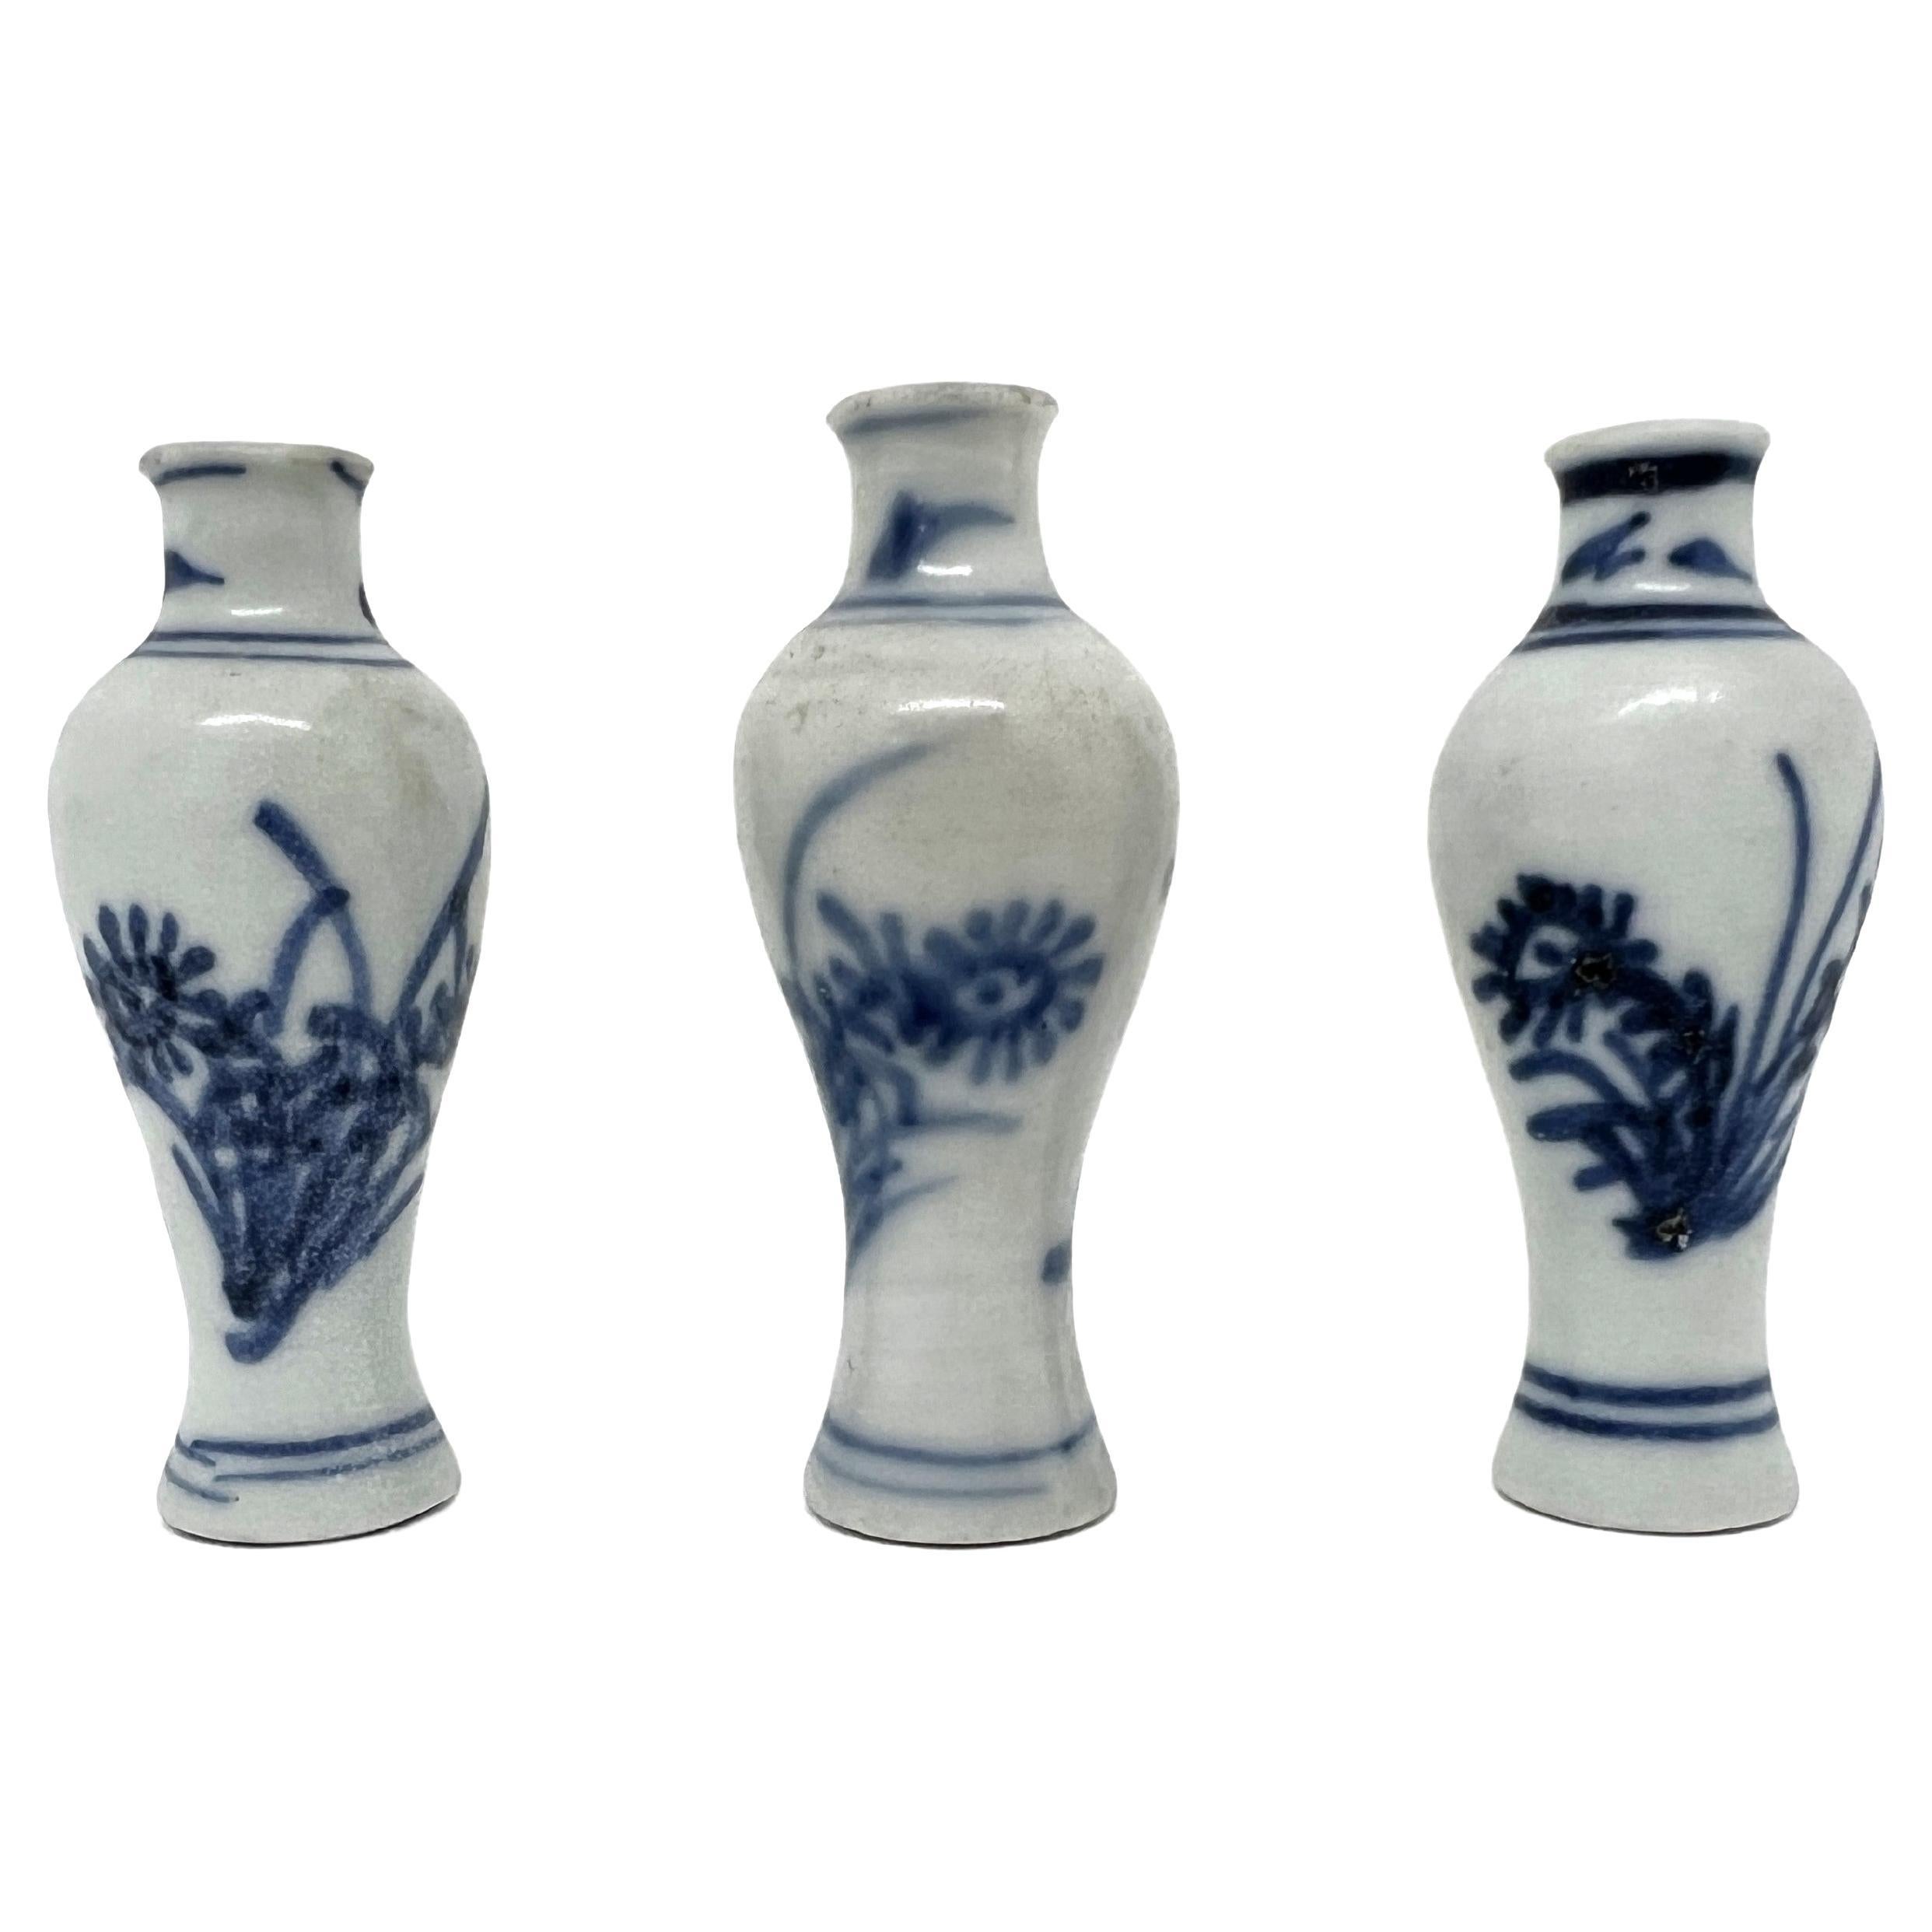 Ensemble de trois vases miniatures bleu et blanc, C 1725, Dynastie Qing, époque Yongzheng